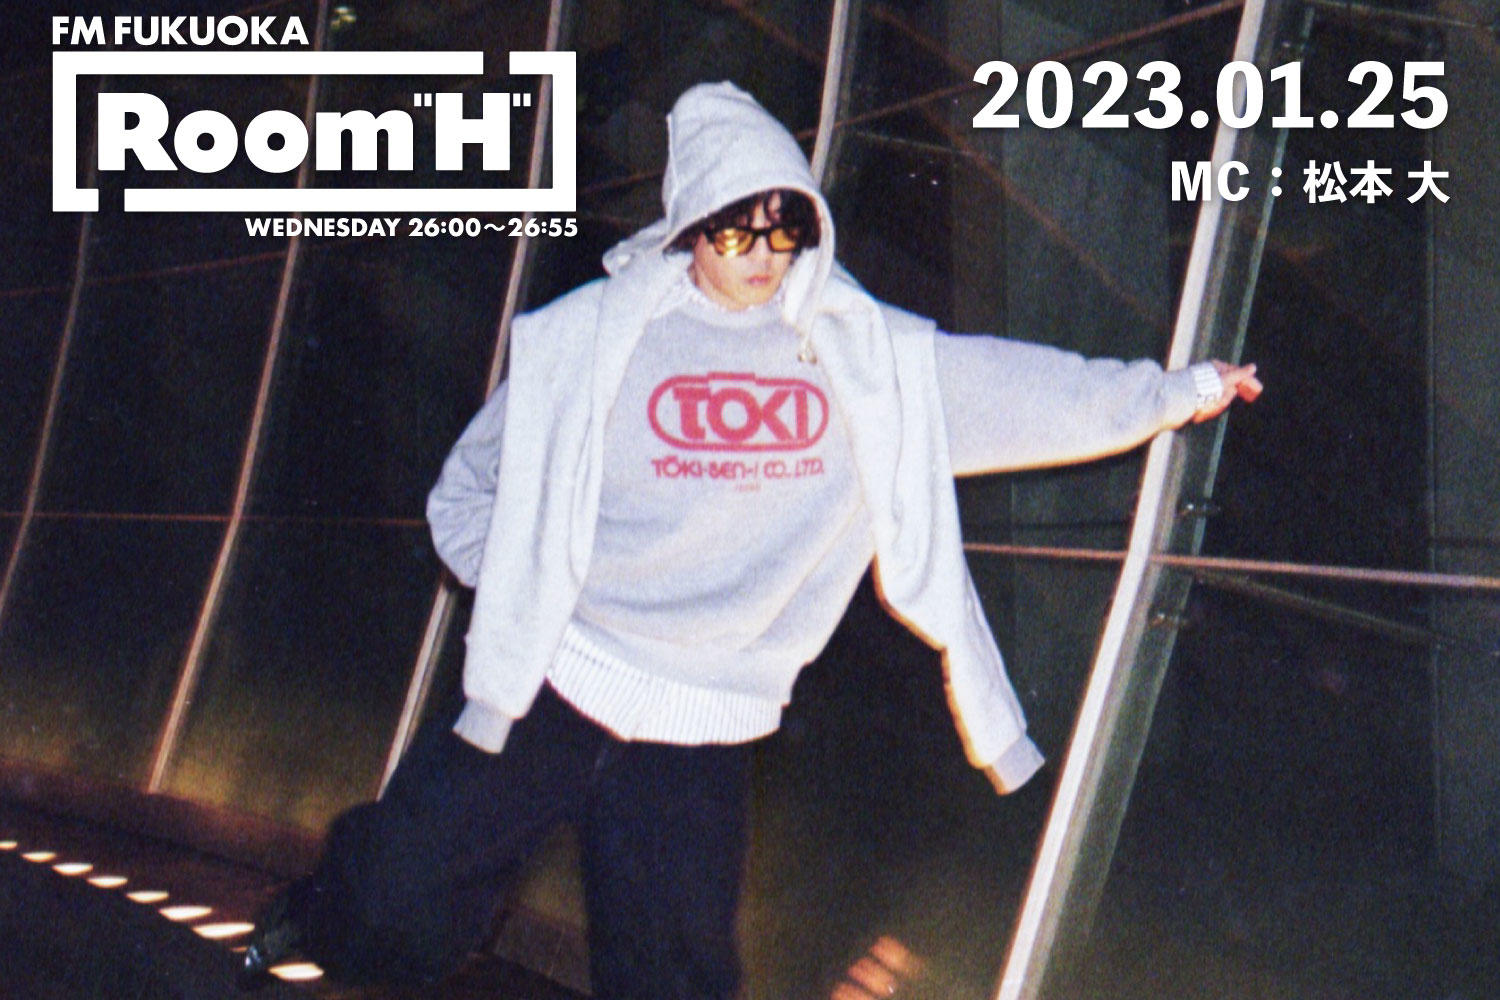 【読むラジオ】MC：松本大 「Room H」 2013年によく聴いていた曲を紹介！-2023.01.25-